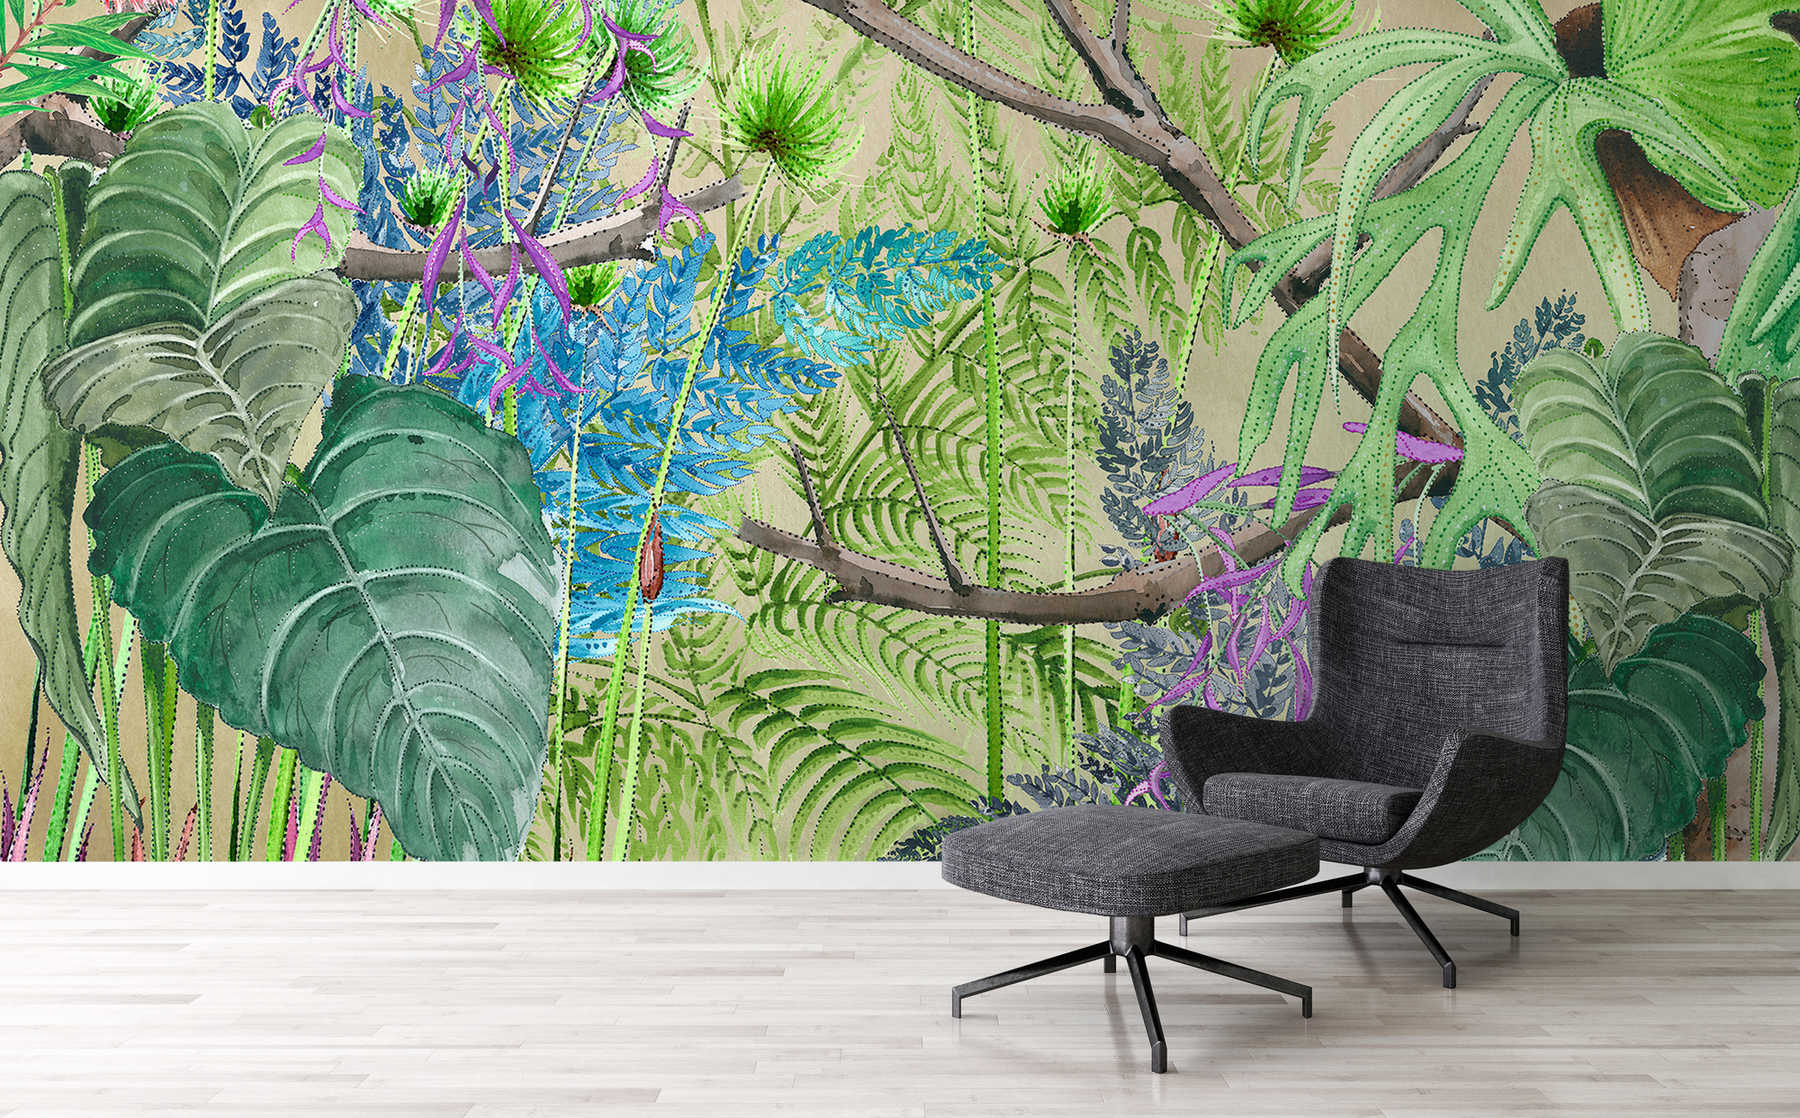             Dschungel Fototapete mit Blumen in Blau und Grün auf Premium Glattvlies
        